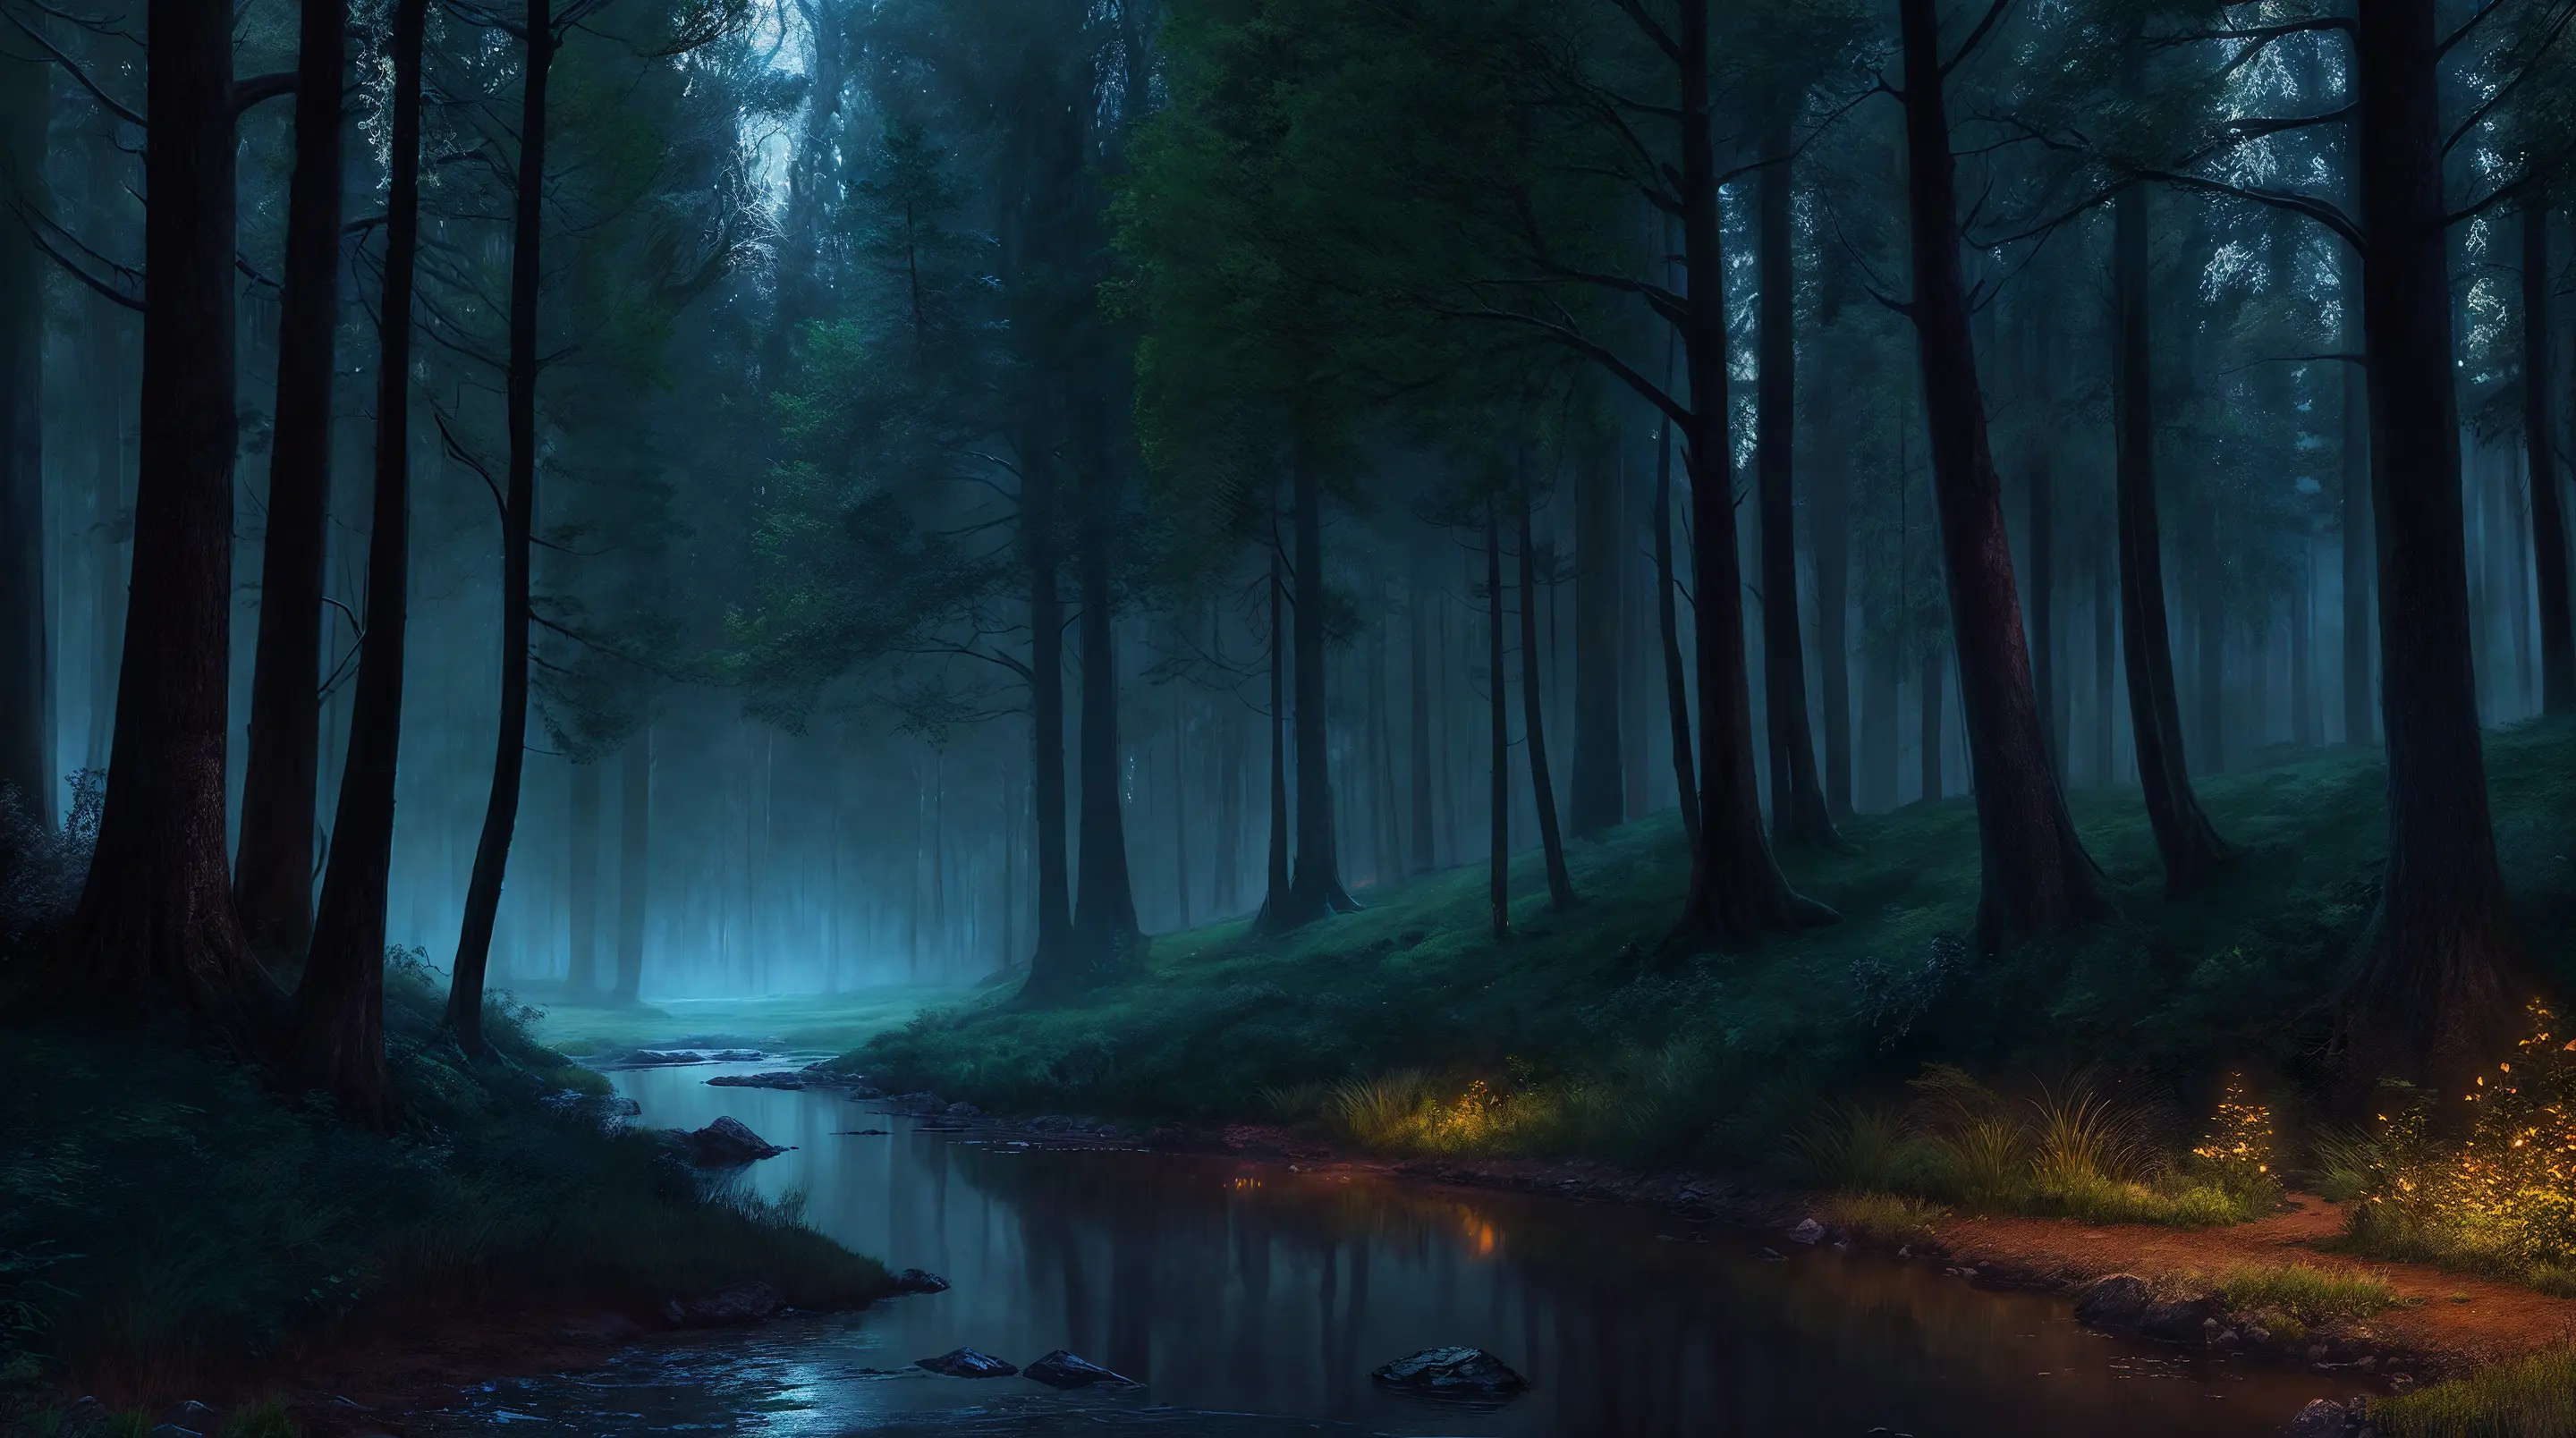 すばらしい眺め,美しい森の端の美しい自然を描いたプロフェッショナルな高品質デジタル絵画,春の夜の茂み、月明かりの下で, 霧のかかった天気,
ドラマチックな照明, 8K解像度, 詳細, 集中, ミッドレンジショット ドラマチックな暗闇,ジェイク・グスマンによる環境アート写真